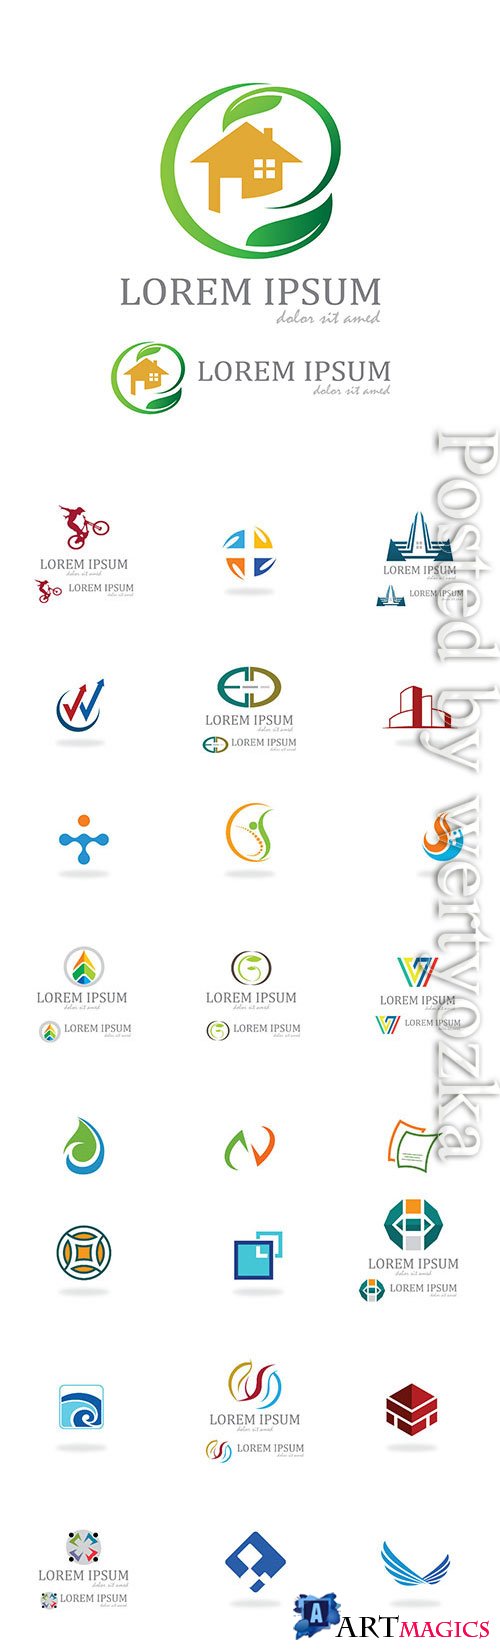 Assorted logos in vector